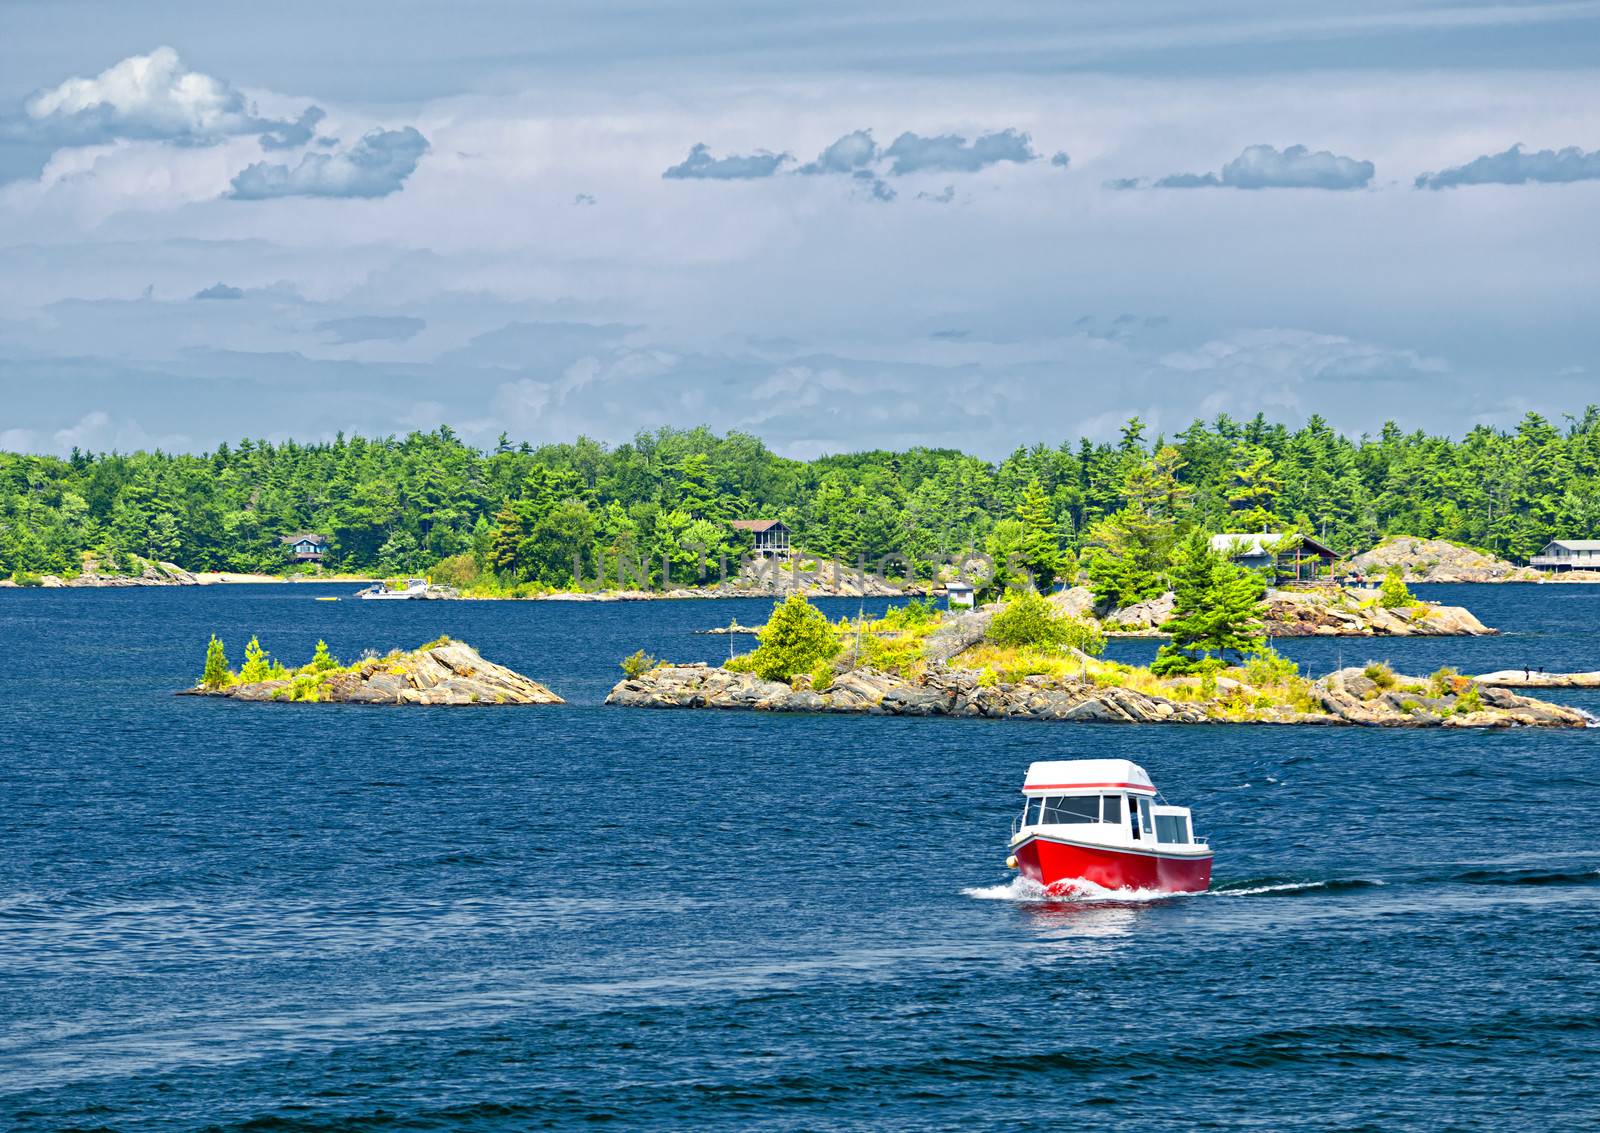 Small boat on lake near island in Georgian Bay, Ontario Canada